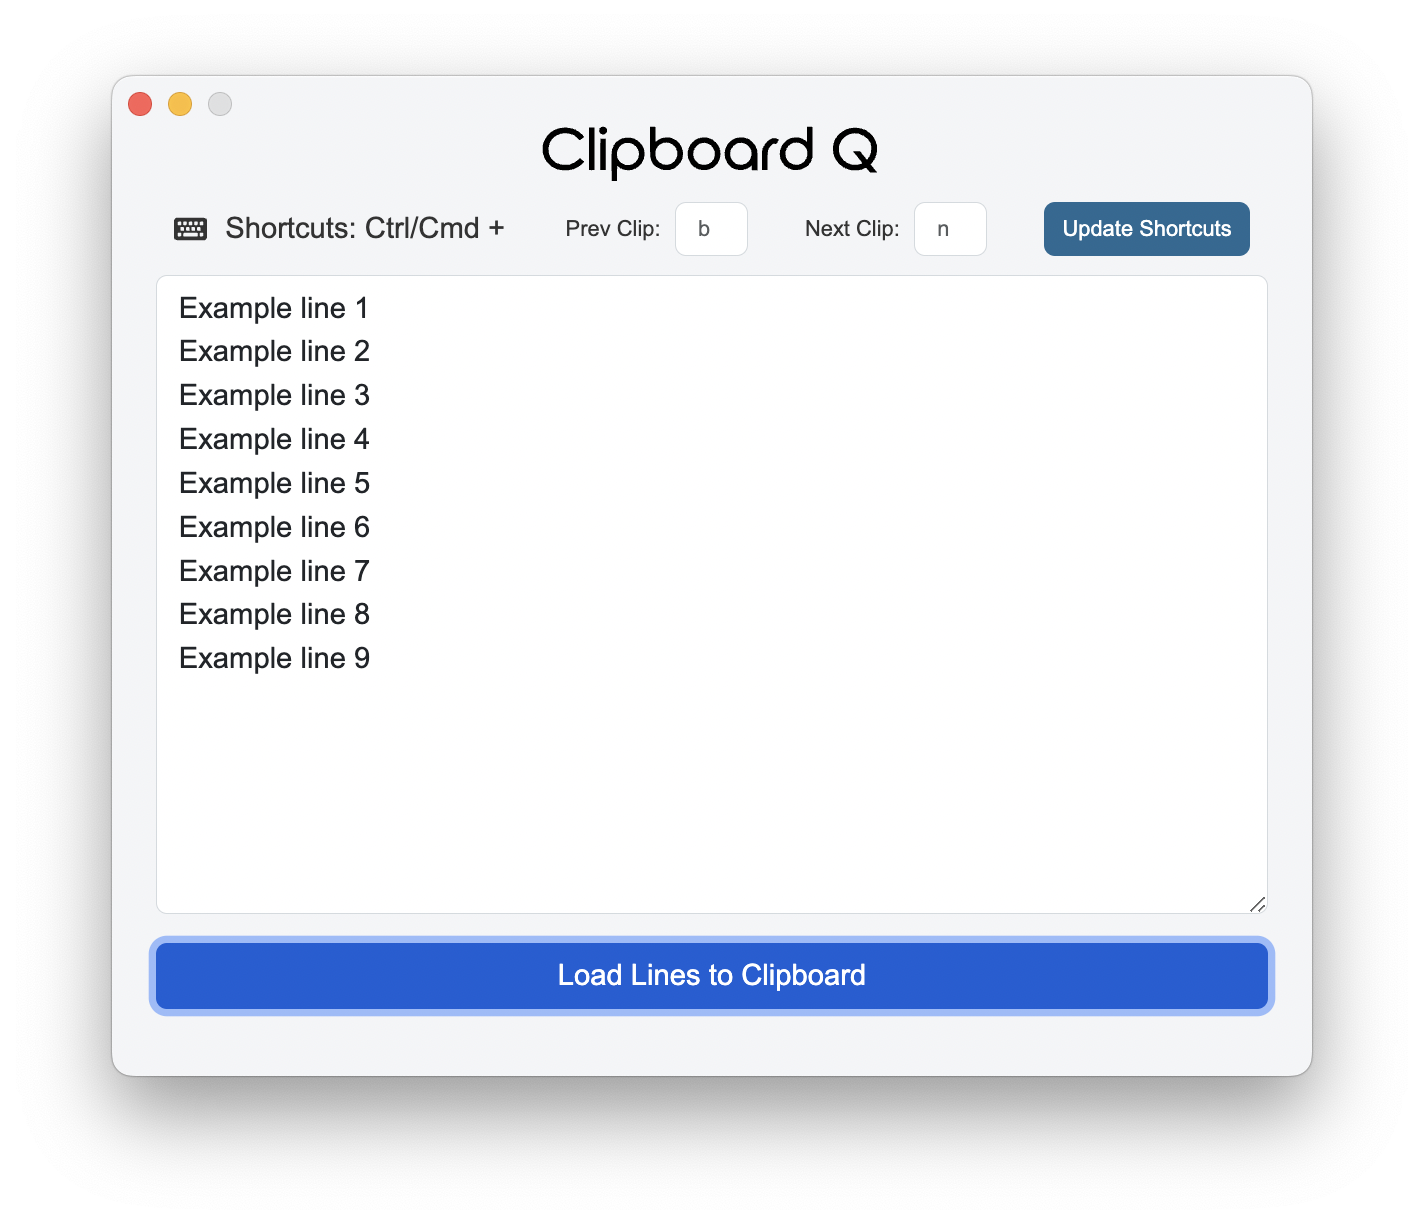 Clipboard Q Main Screen